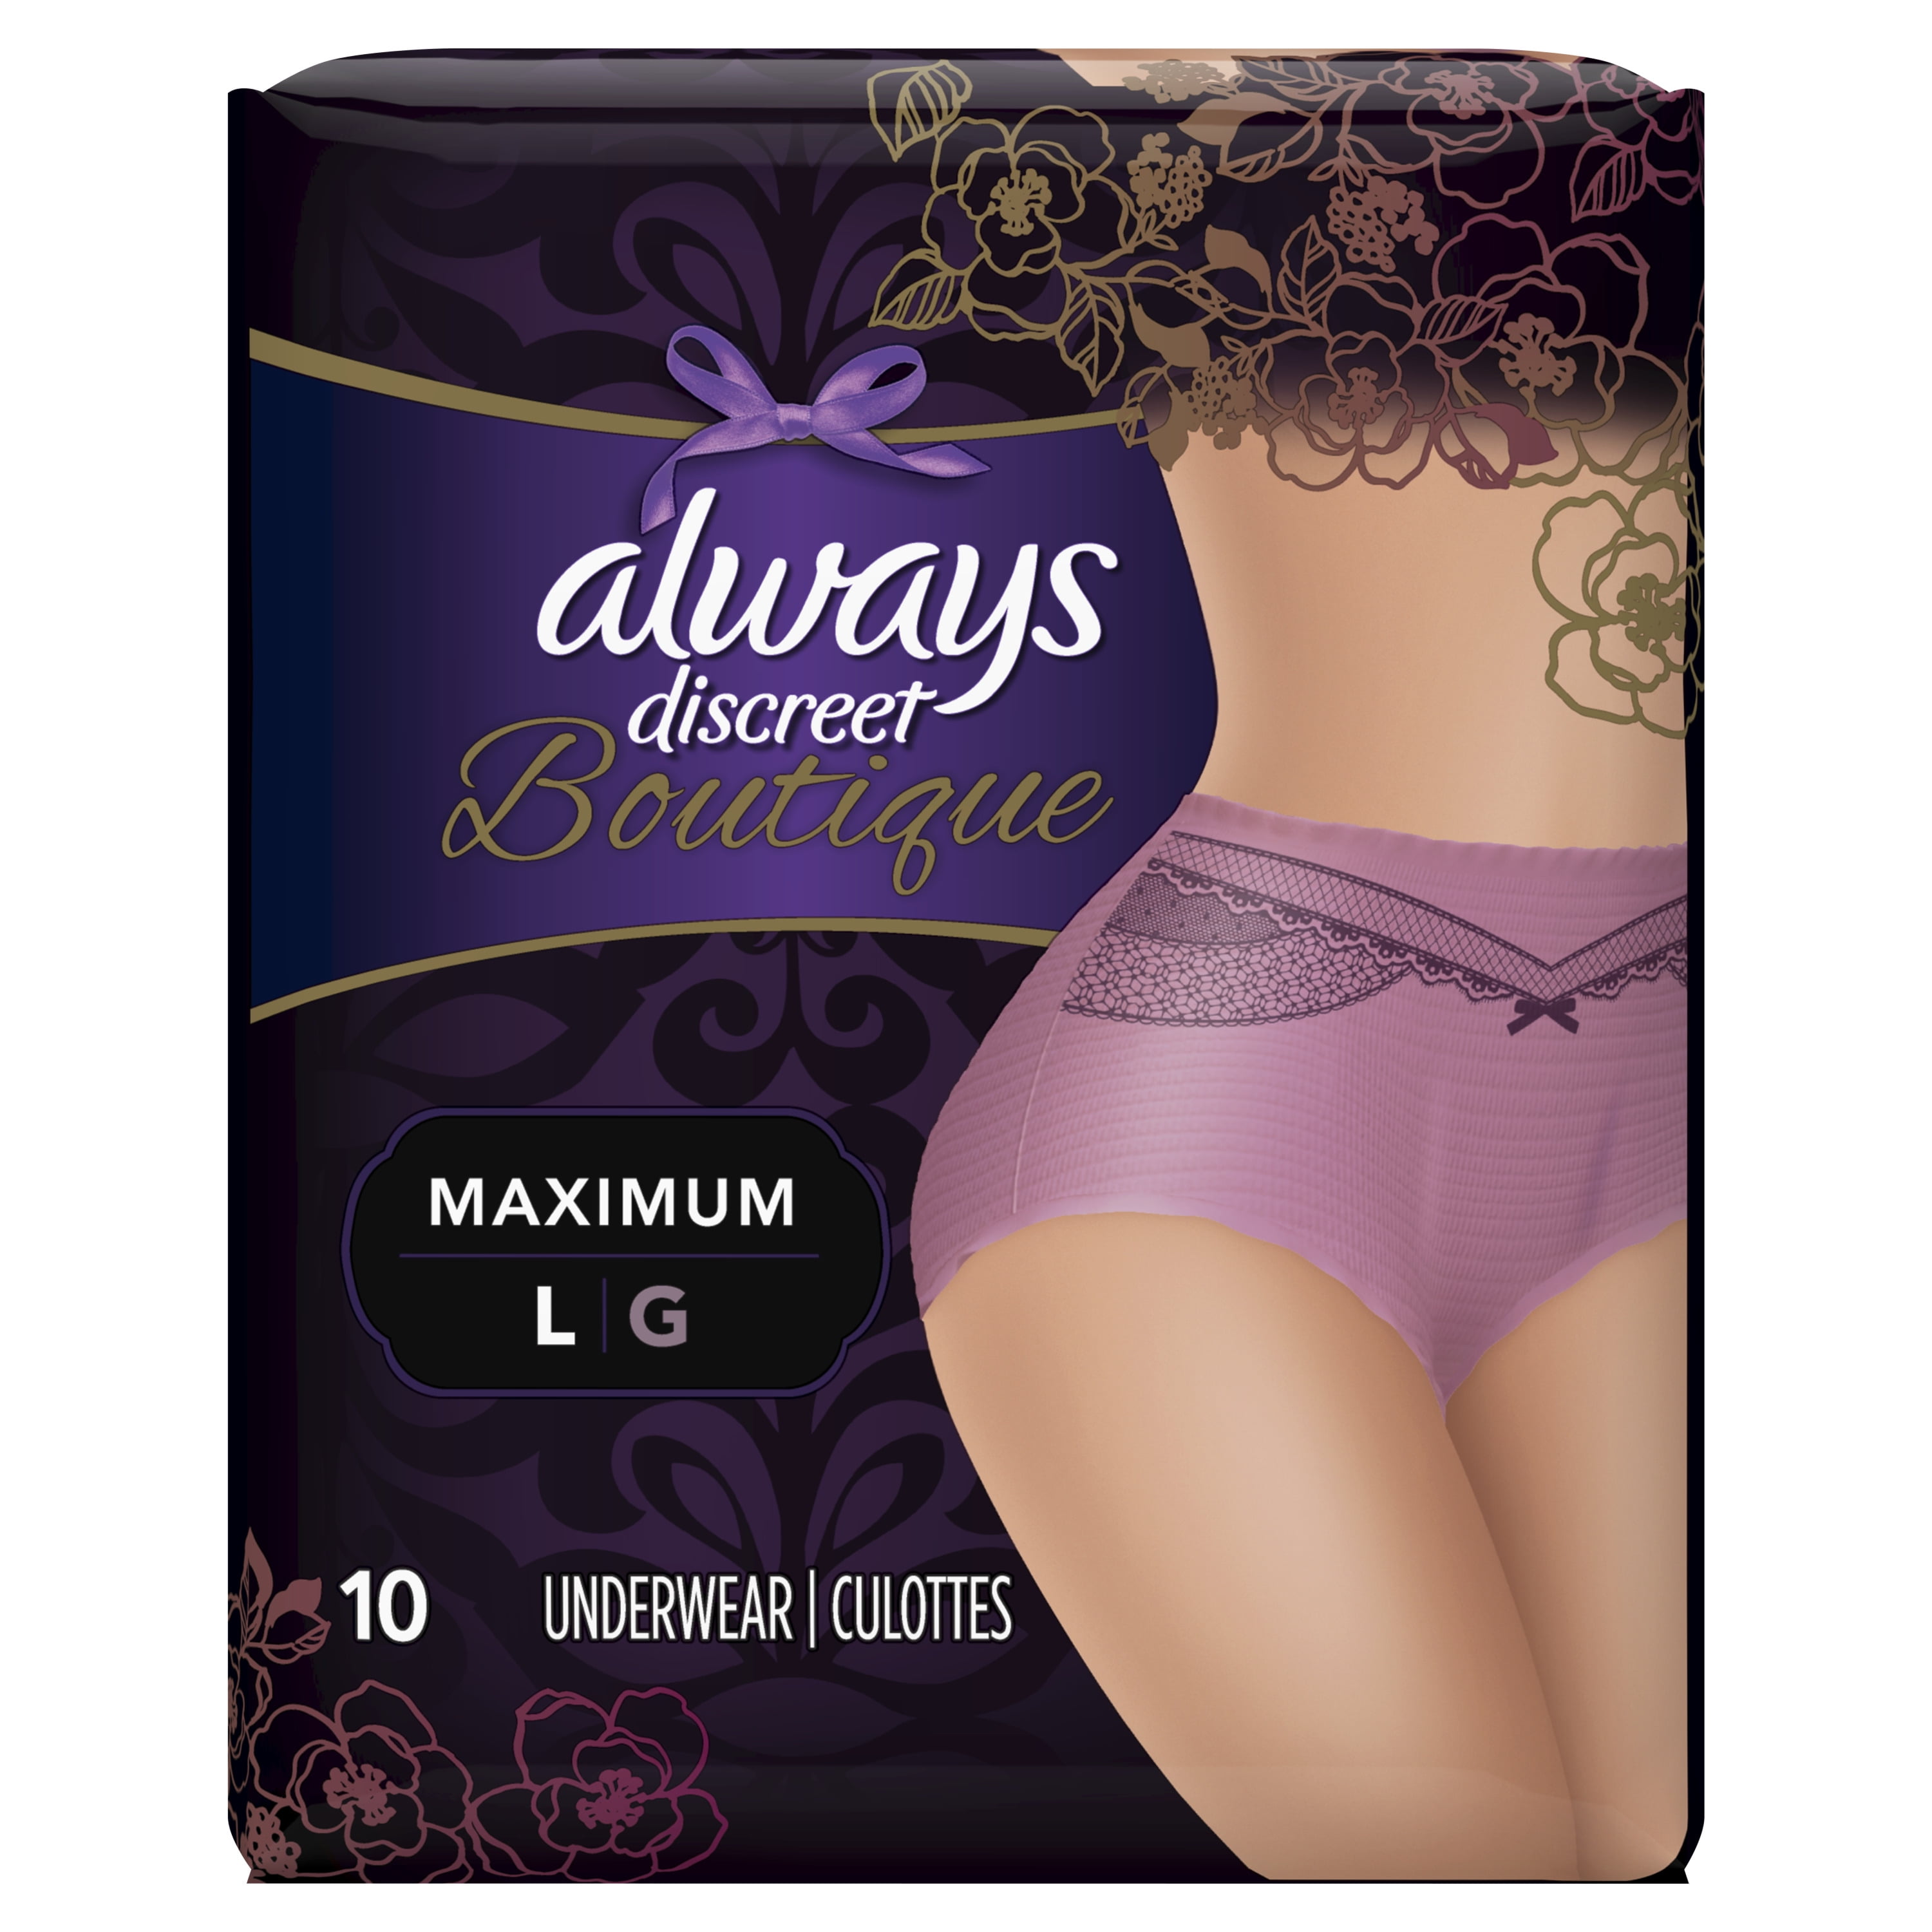 Always Discreet Underwear, Boutique, Maximum, Large 10 ea, Feminine Care